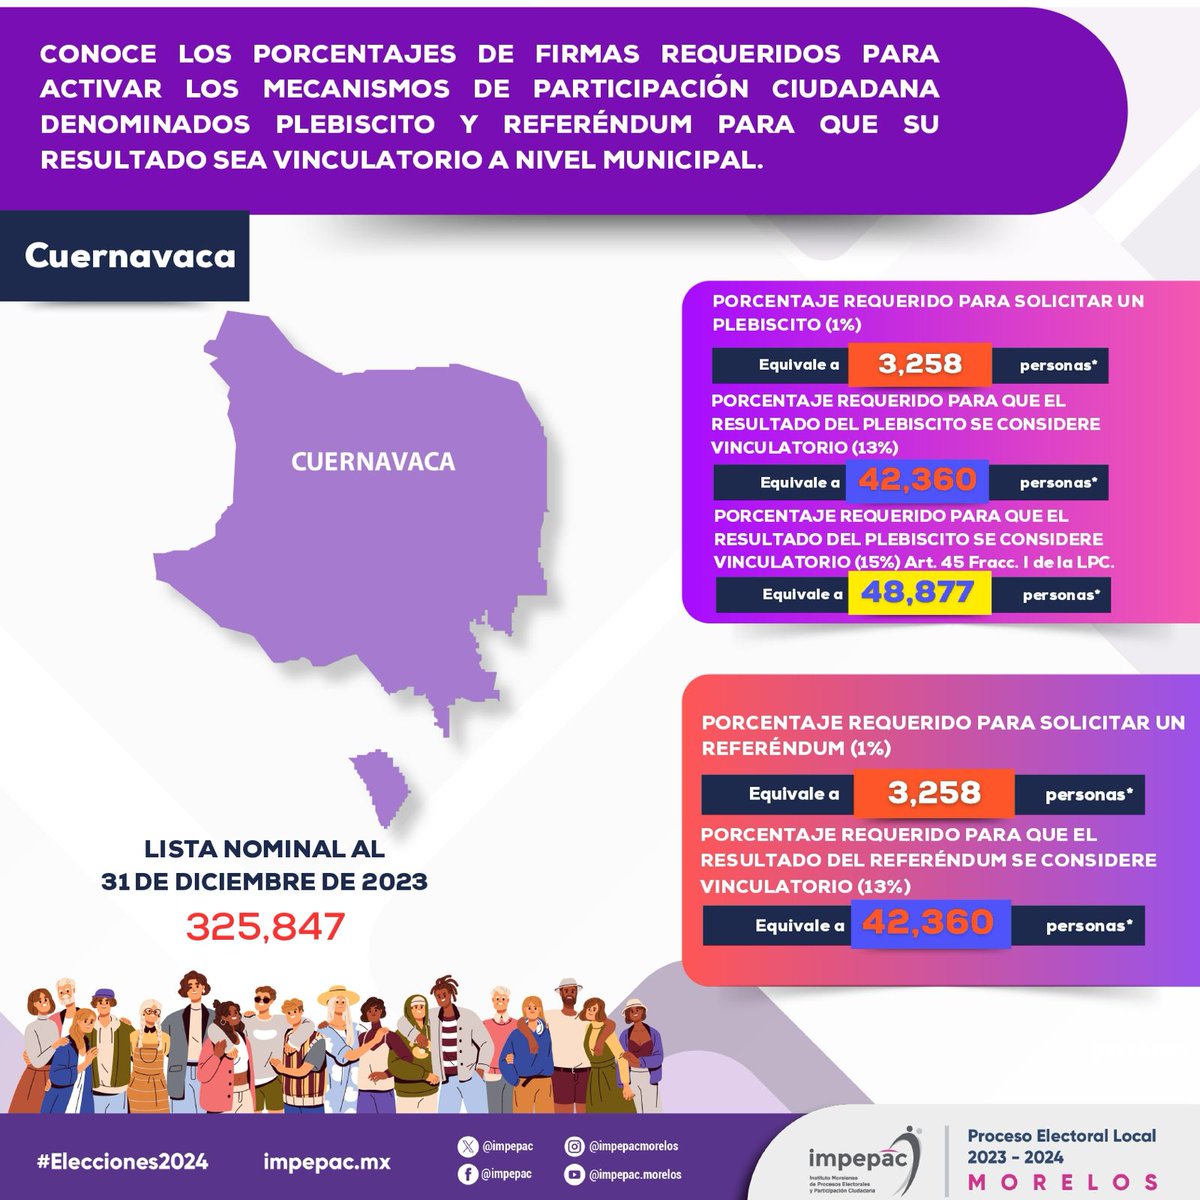 📌𝐌𝐞𝐜𝐚𝐧𝐢𝐬𝐦𝐨𝐬 𝐝𝐞 𝐩𝐚𝐫𝐭𝐢𝐜𝐢𝐩𝐚𝐜𝐢𝐨́𝐧 🟣Conoce los porcentajes de firmas requeridas para activar los mecanismo de participación ciudadana ➡️Impepac.mx #Elecciones2024🗳